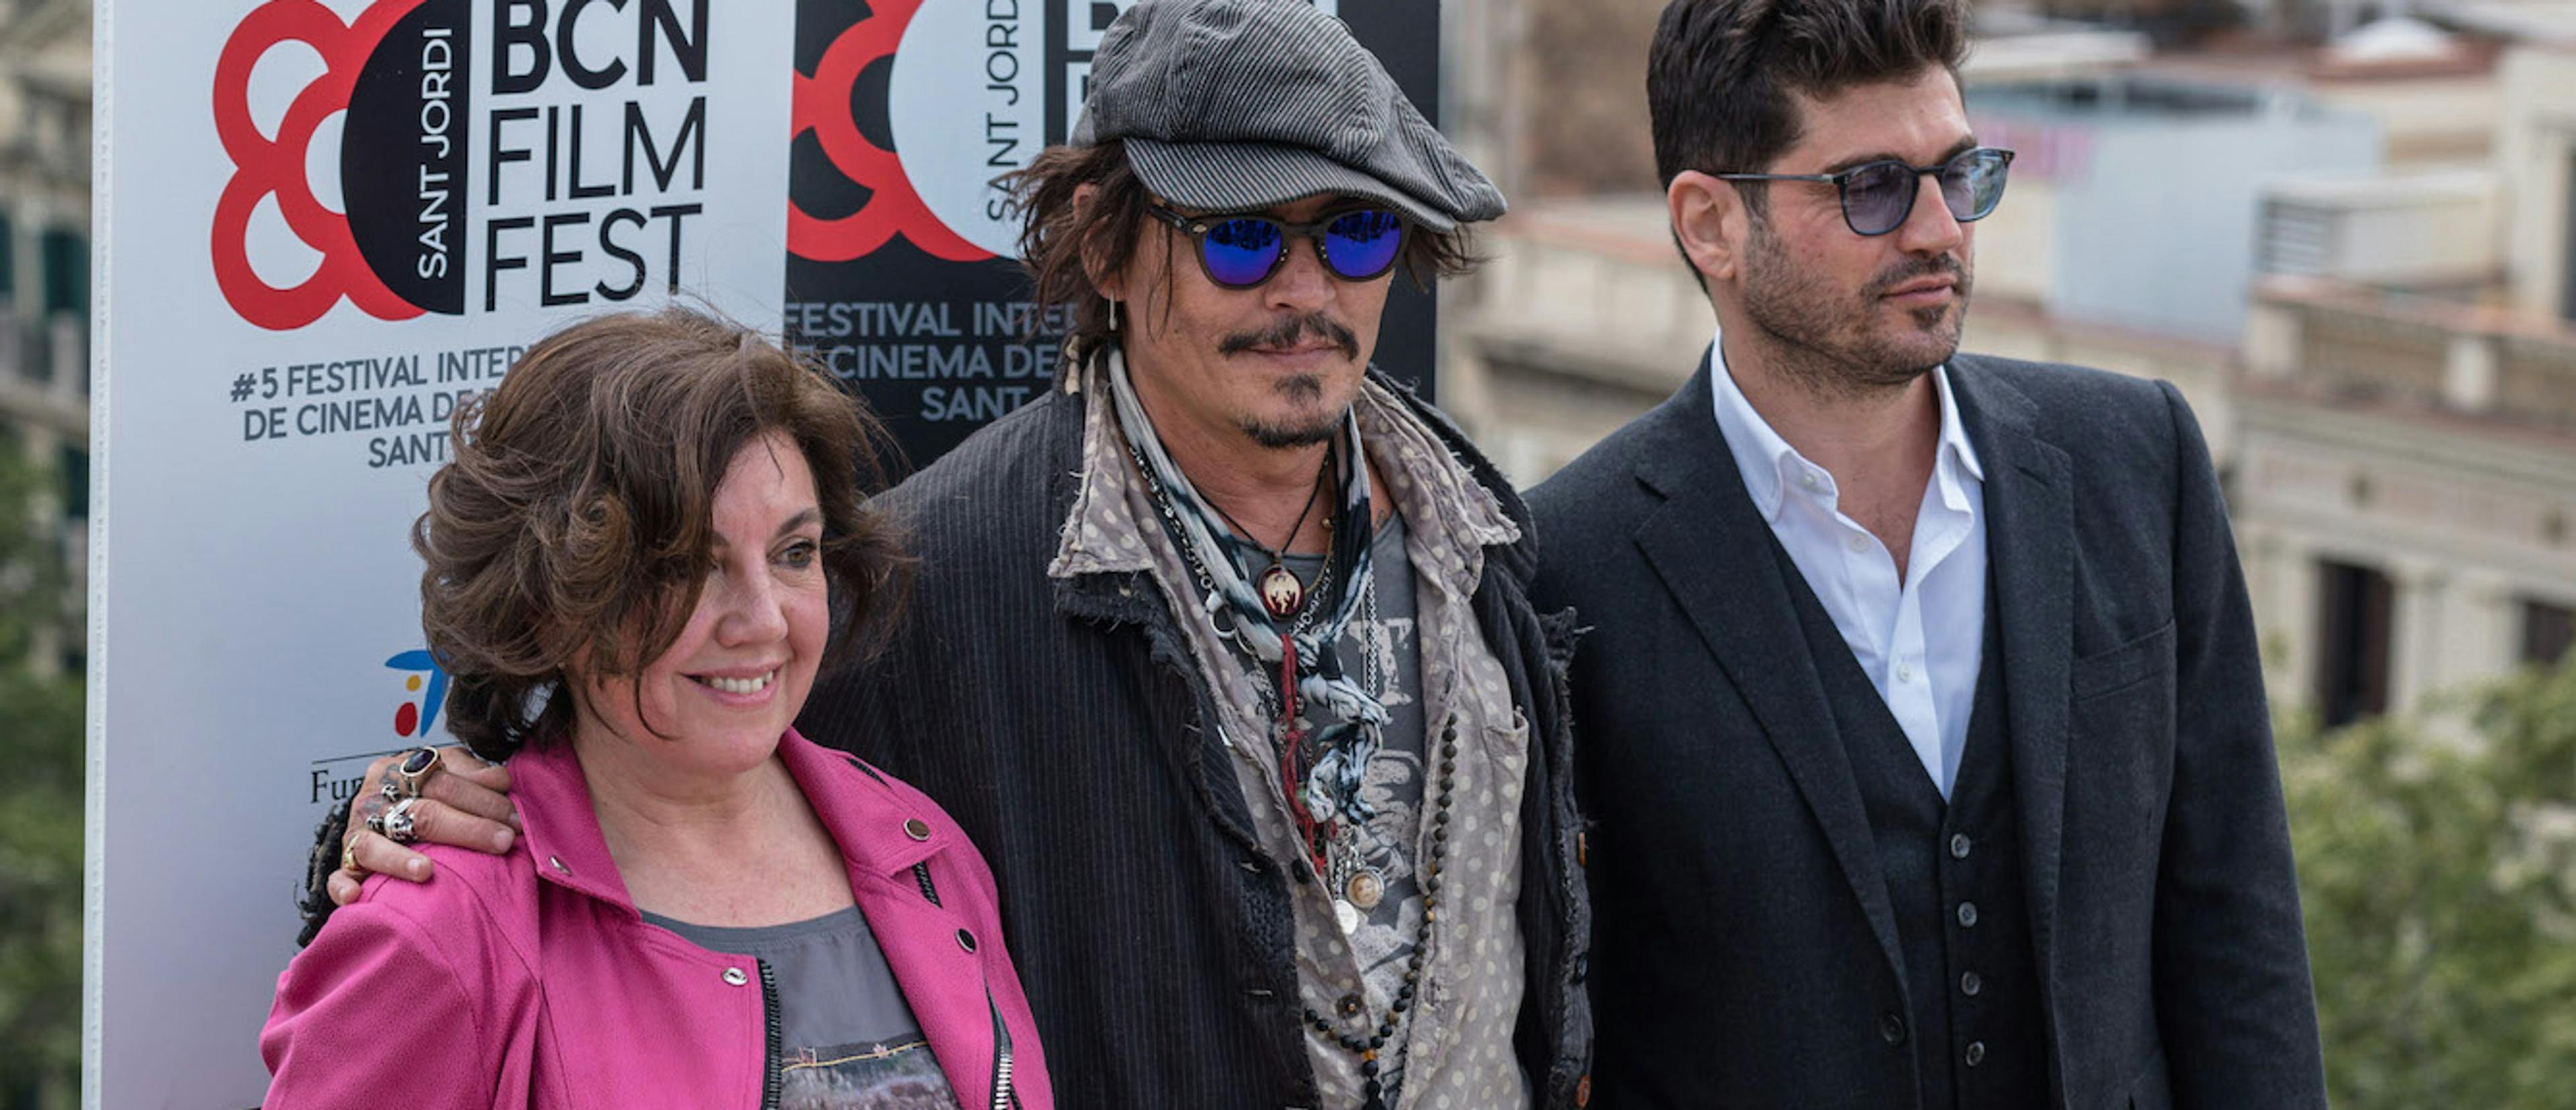 Conxita Casanovas y Johnny Depp en la presentación de 'El fotógrafo de Minimata' en el BCN Film Fest